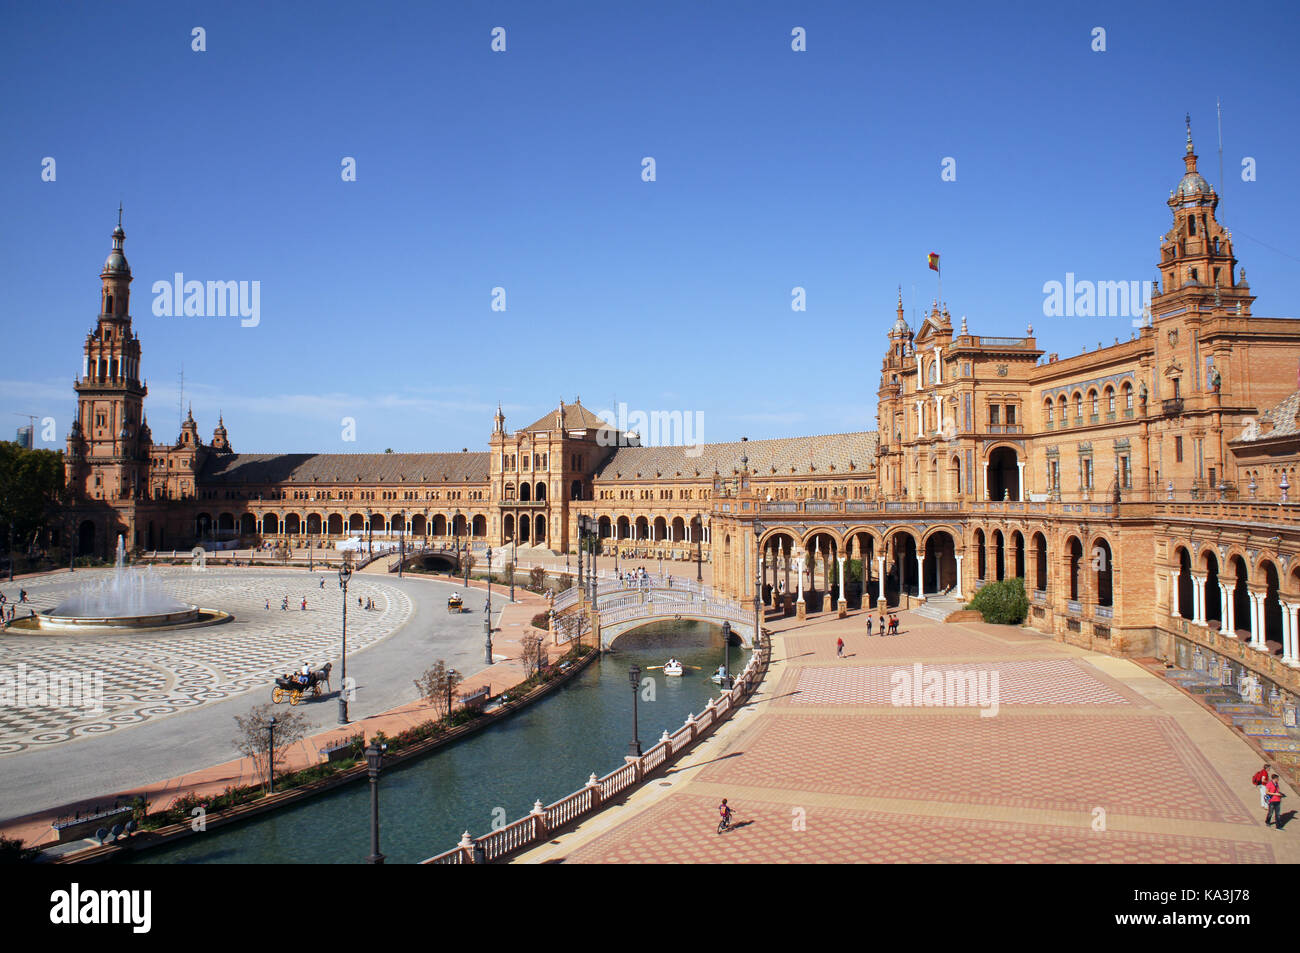 Plaza de España en Sevilla (España), España con puentes sobre el canal, torres y entrada principal al edificio. Ejemplo de morisco y Renacimiento Foto de stock